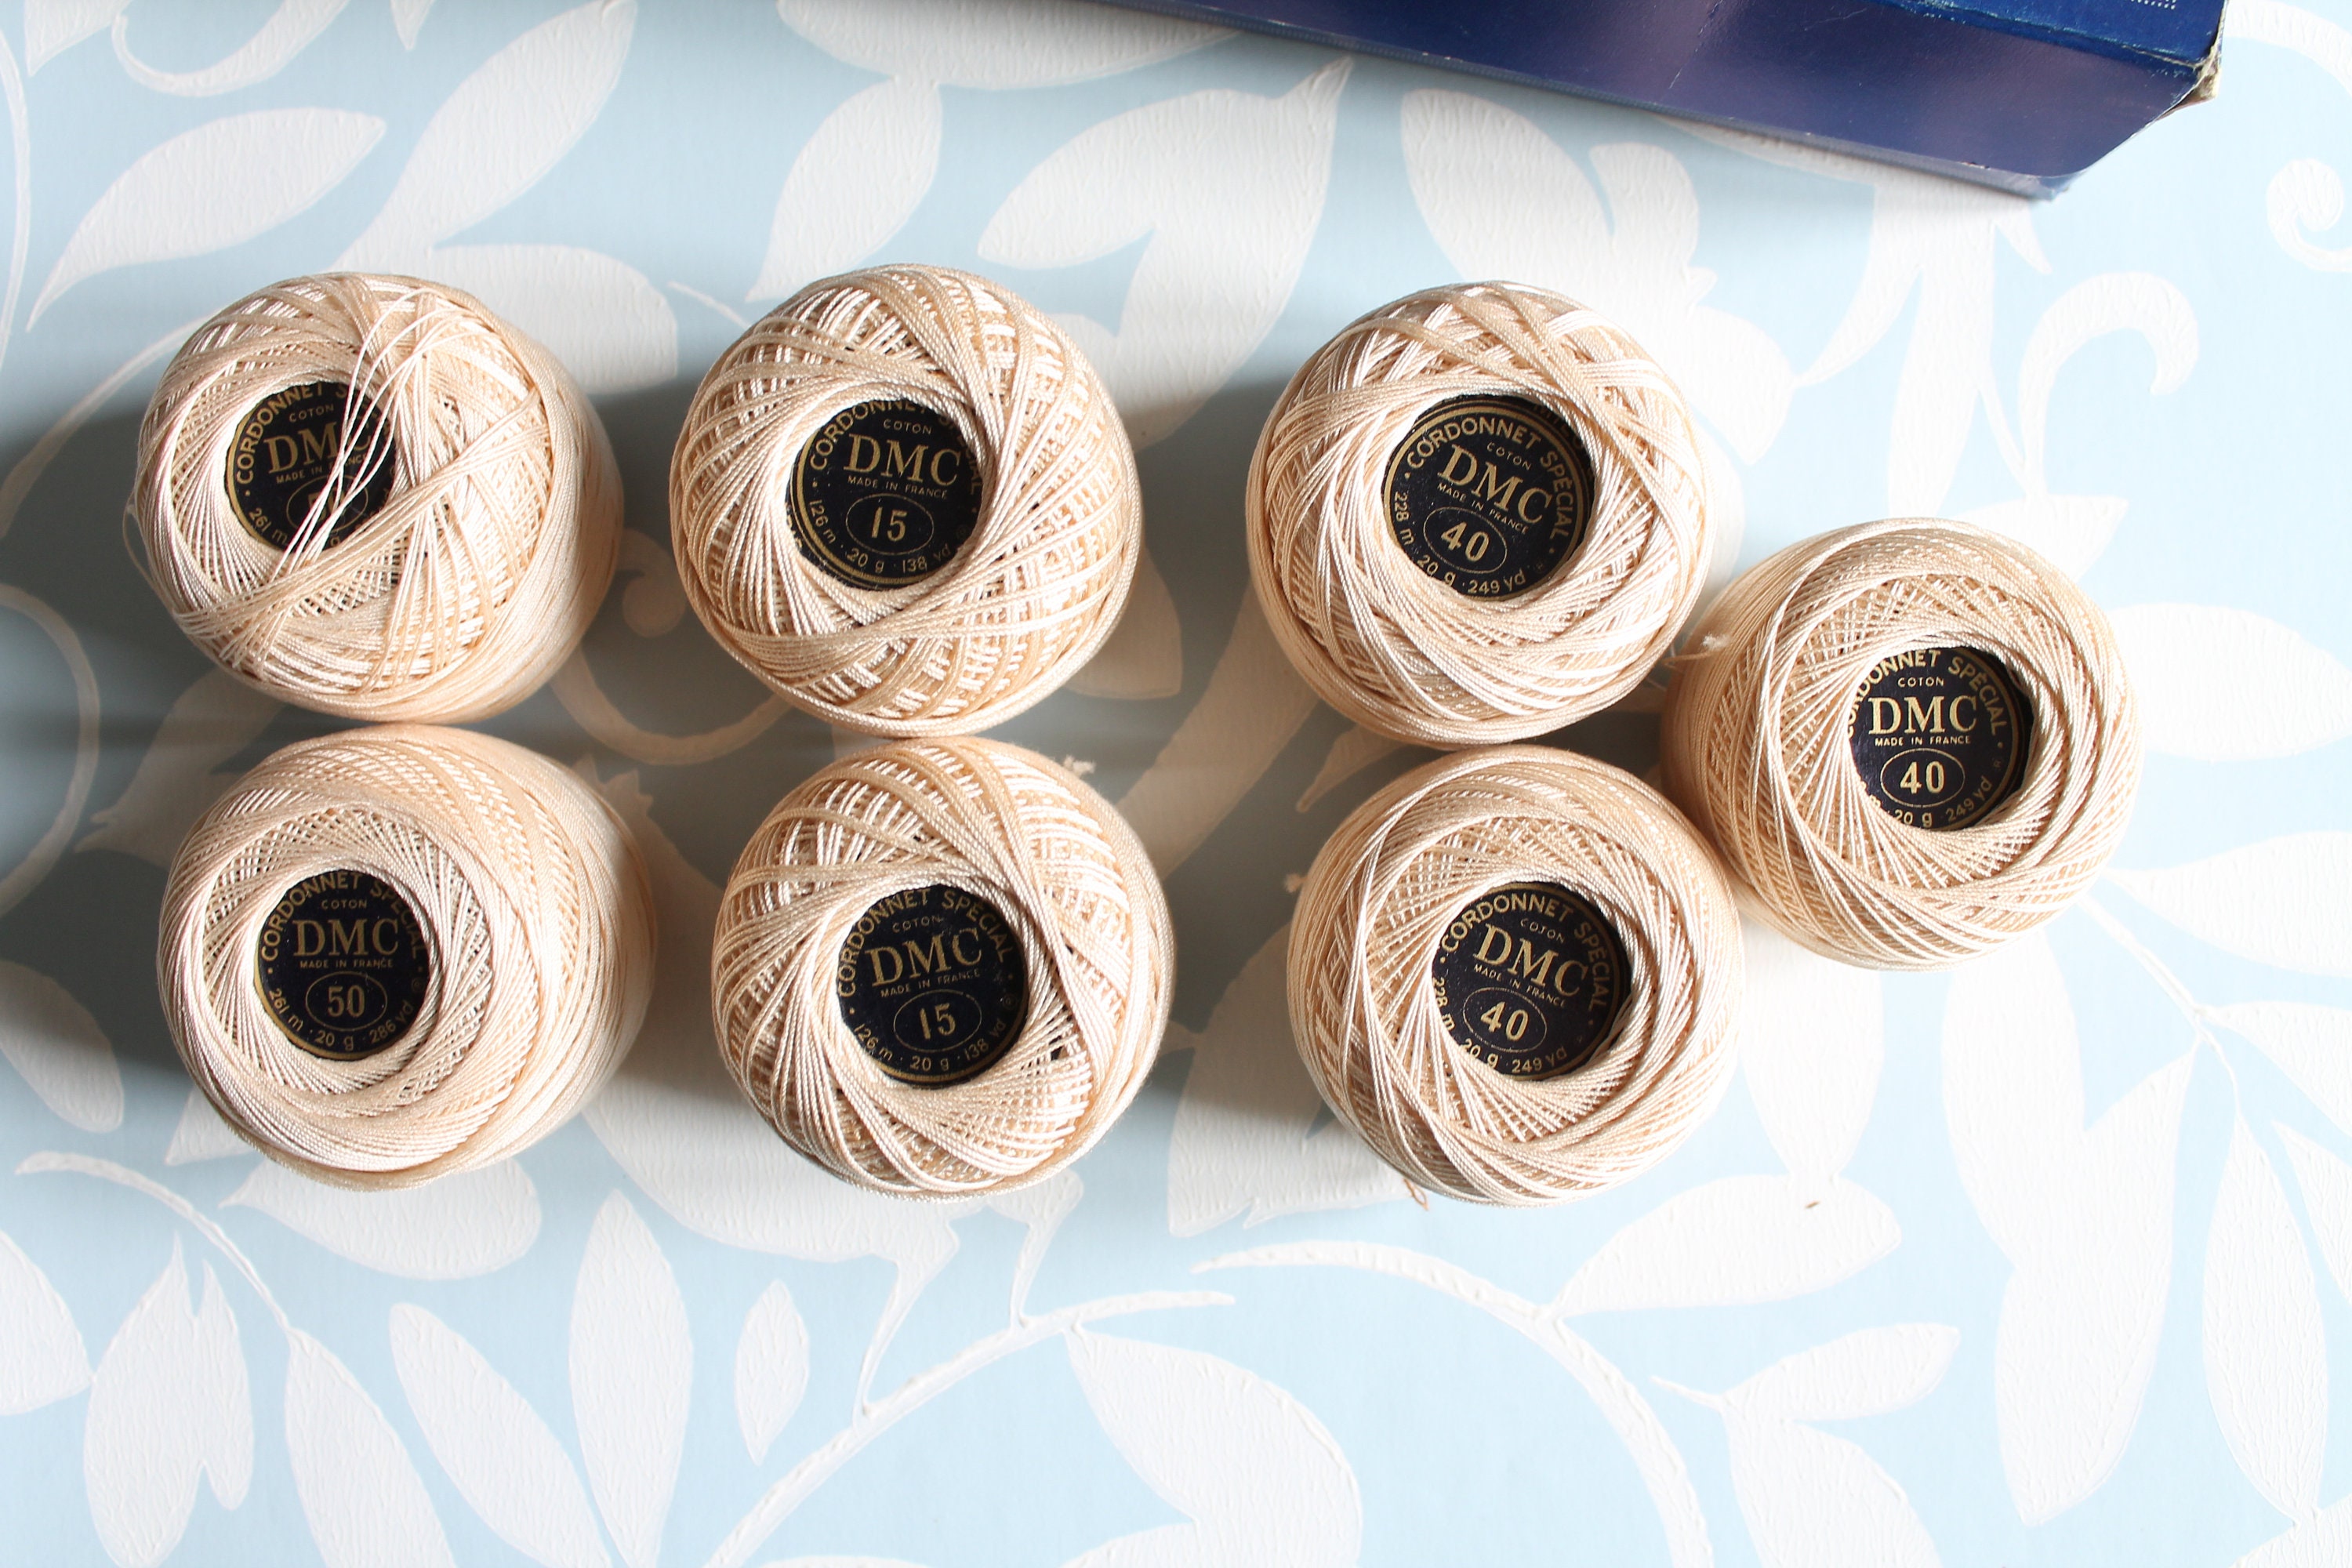 Fil coton pour crochet - cordonnet spécial - écru n°10 - dmc - ab1616 - Un  grand marché